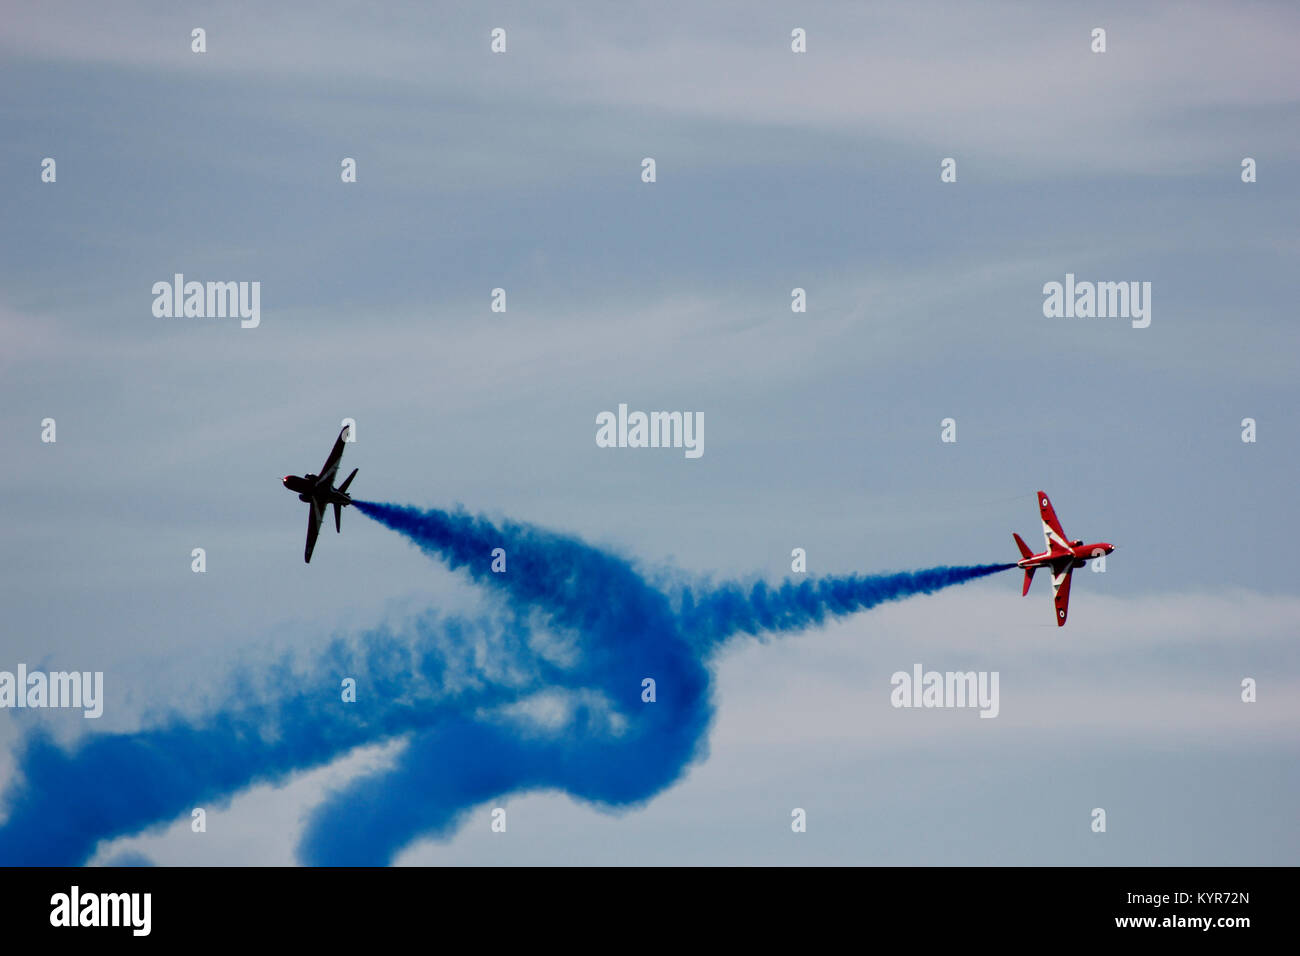 Des flèches rouges Affichage à Farnborough Airshow 2014 Banque D'Images